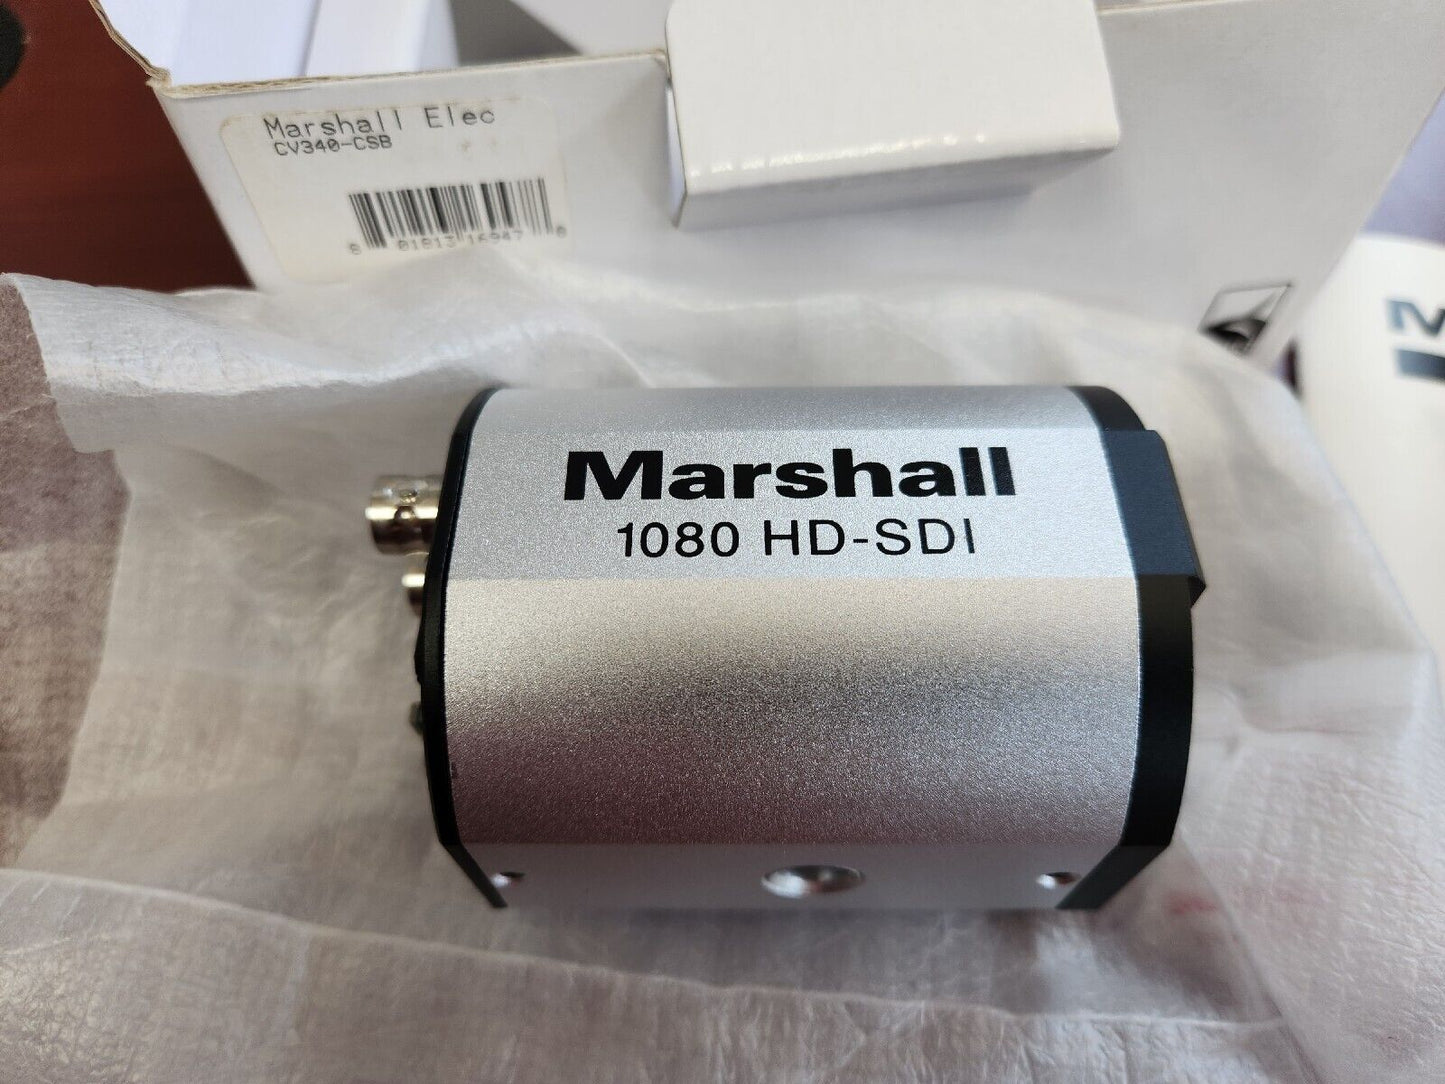 Marshall CV340-CSB 2.2 Megapixel HD-SDI Compact CS Broadcast Camera (No Lens)